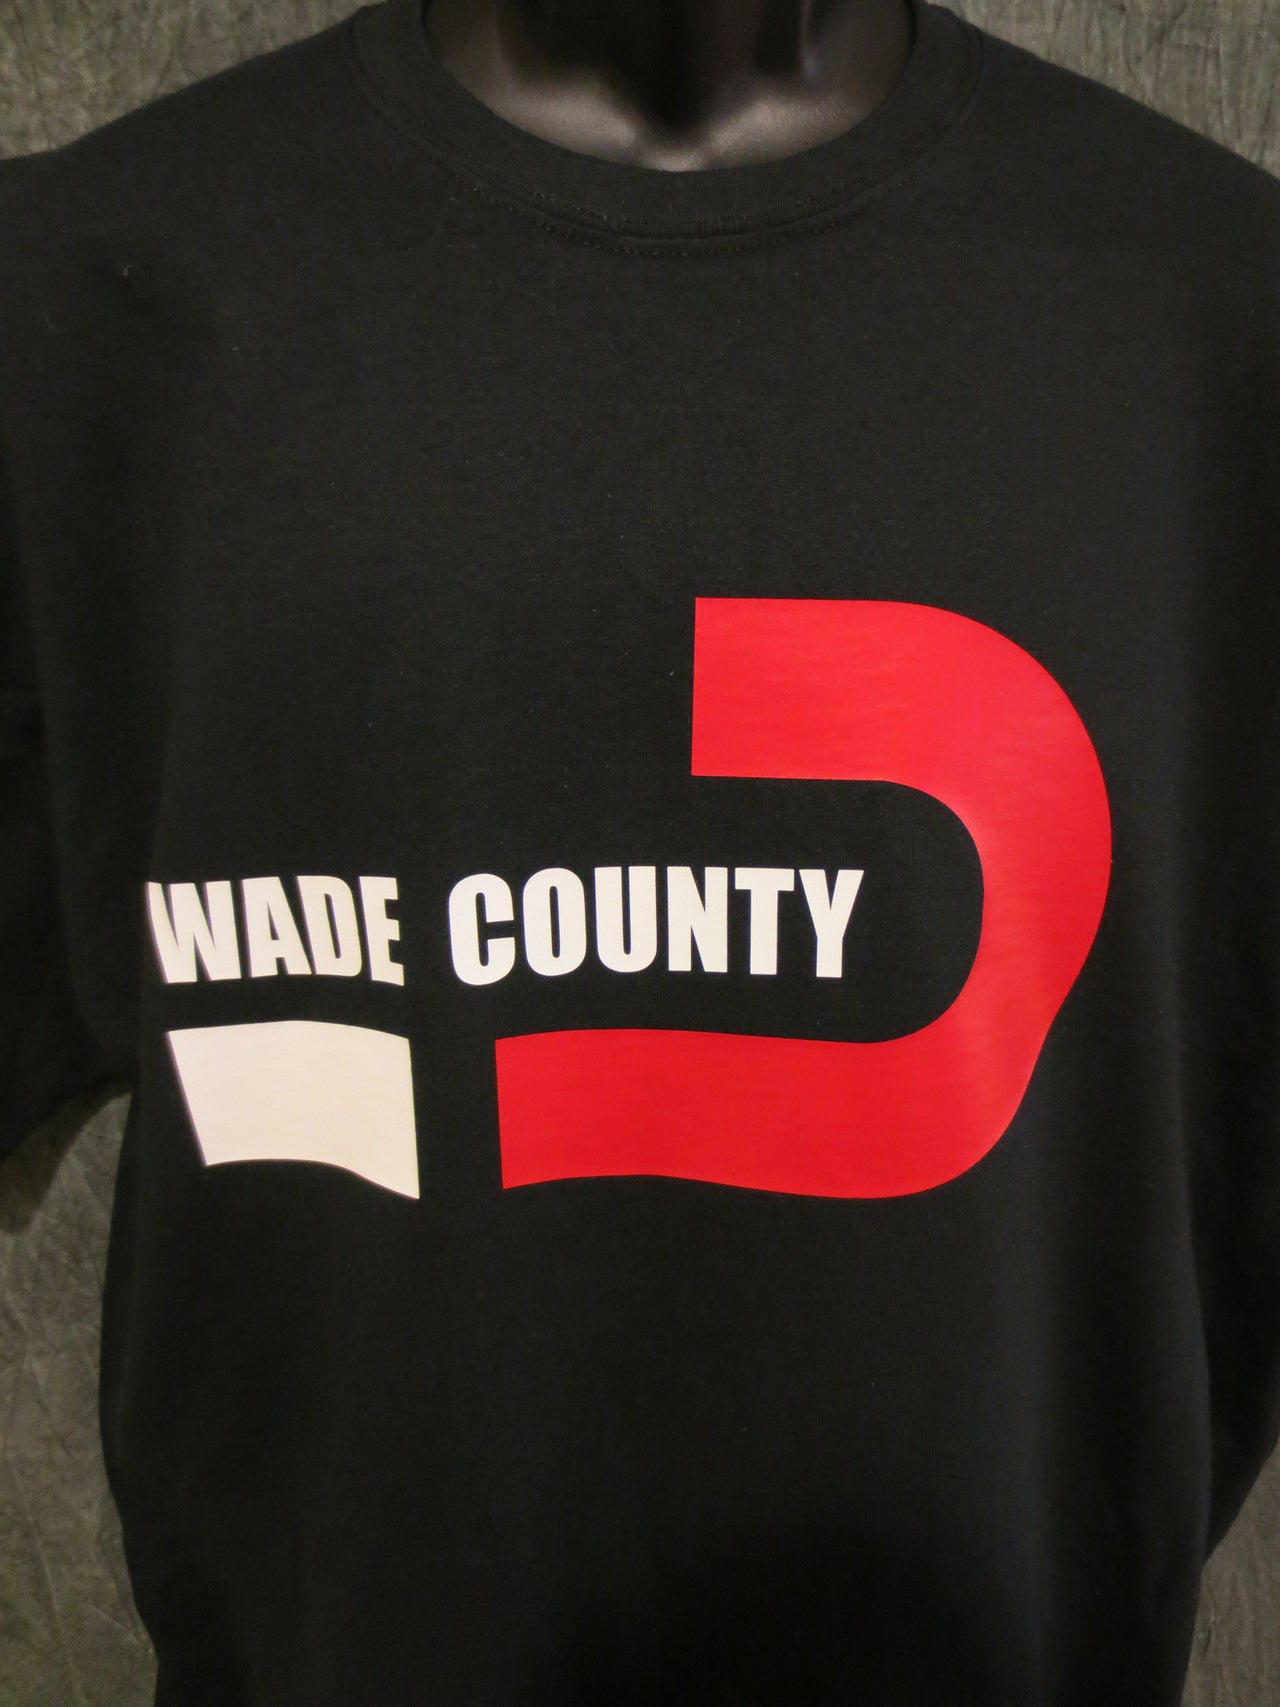 Miami Heat "Wade County" Dwyane Wade Black Tshirt - TshirtNow.net - 2